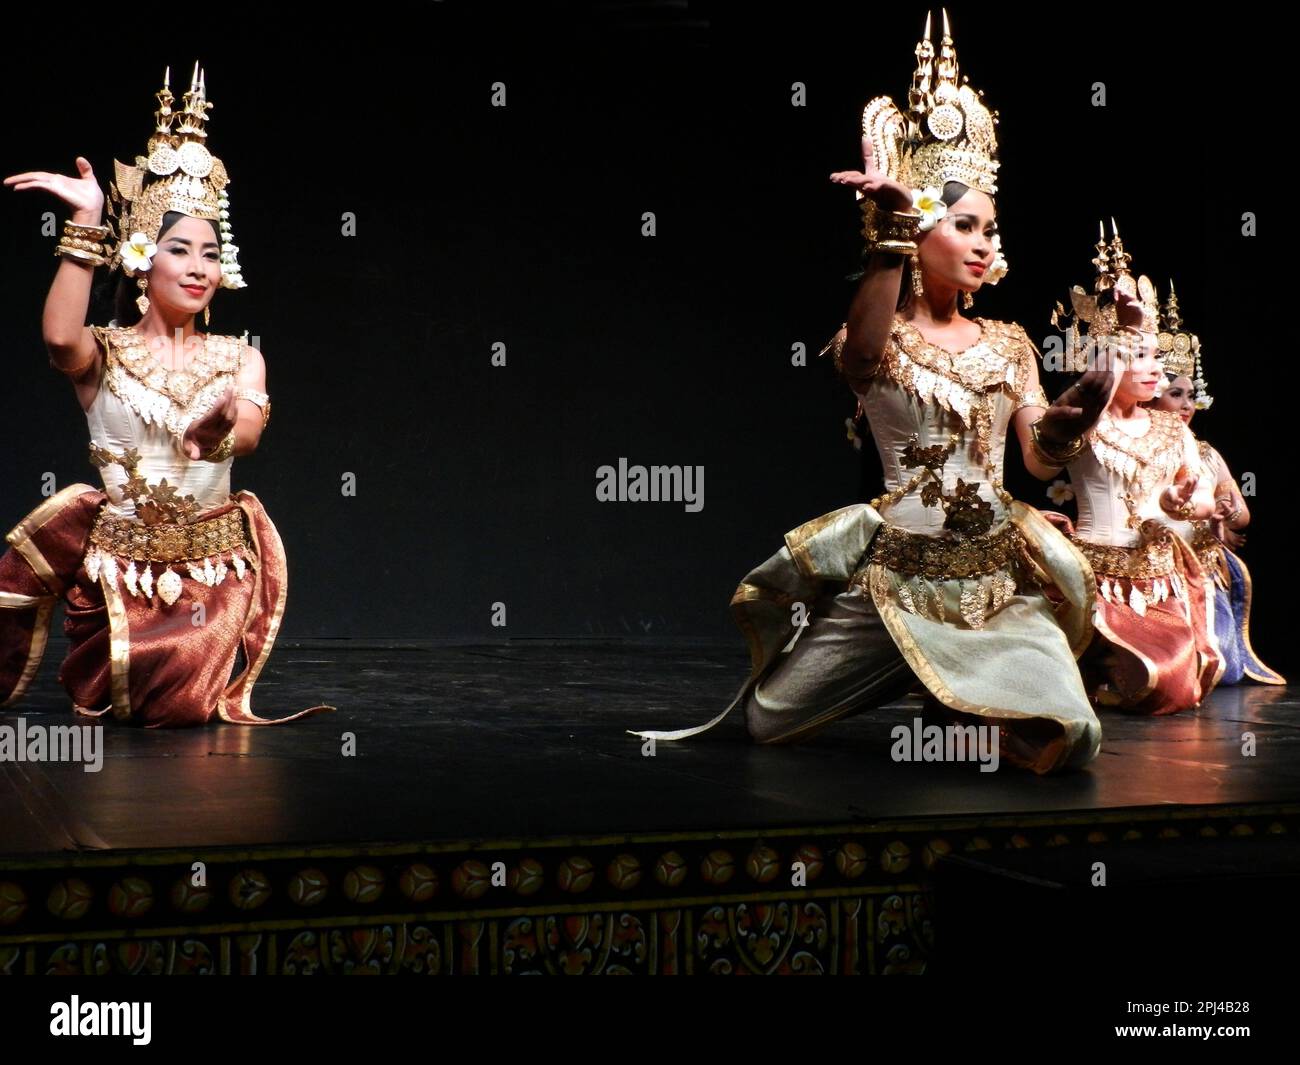 Kambodscha, Phnom Penh: Traditionelle Tanzvorstellung im Nationalmuseum, einschließlich einer Vielzahl klassischer und folkloristischer Tänze. Stockfoto